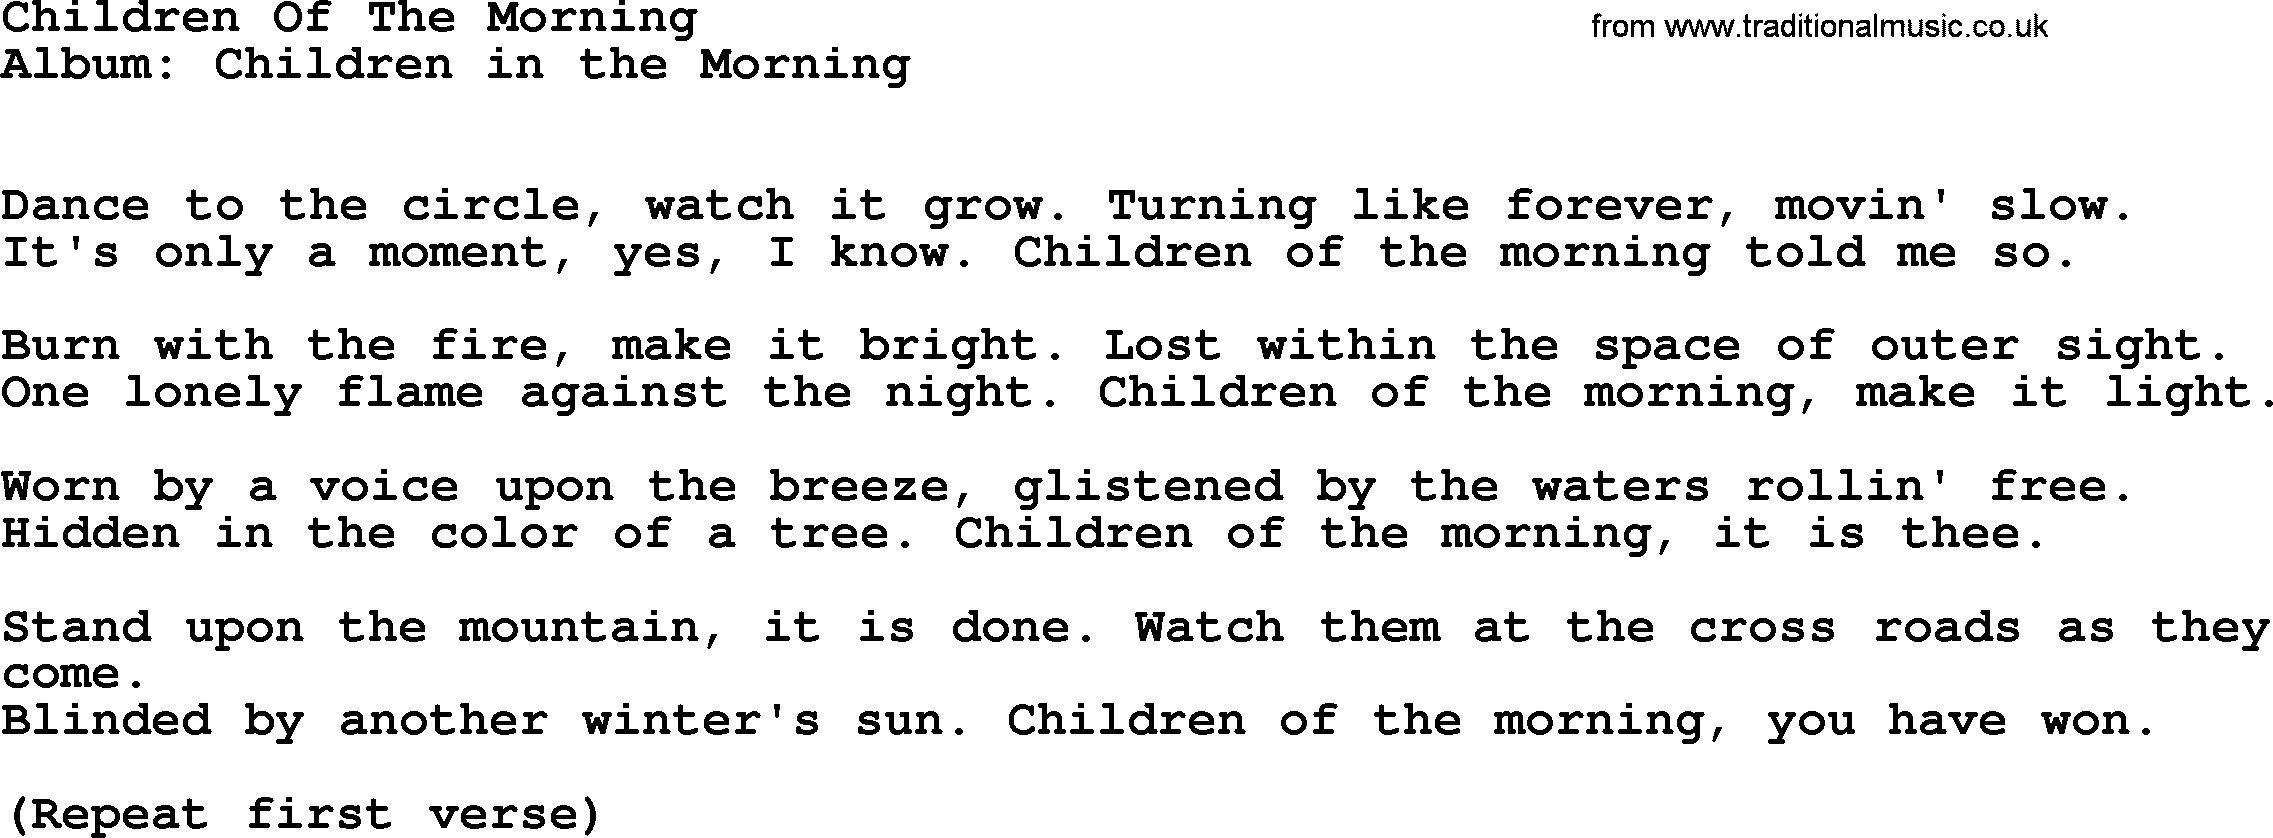 Kingston Trio song Children Of The Morning, lyrics